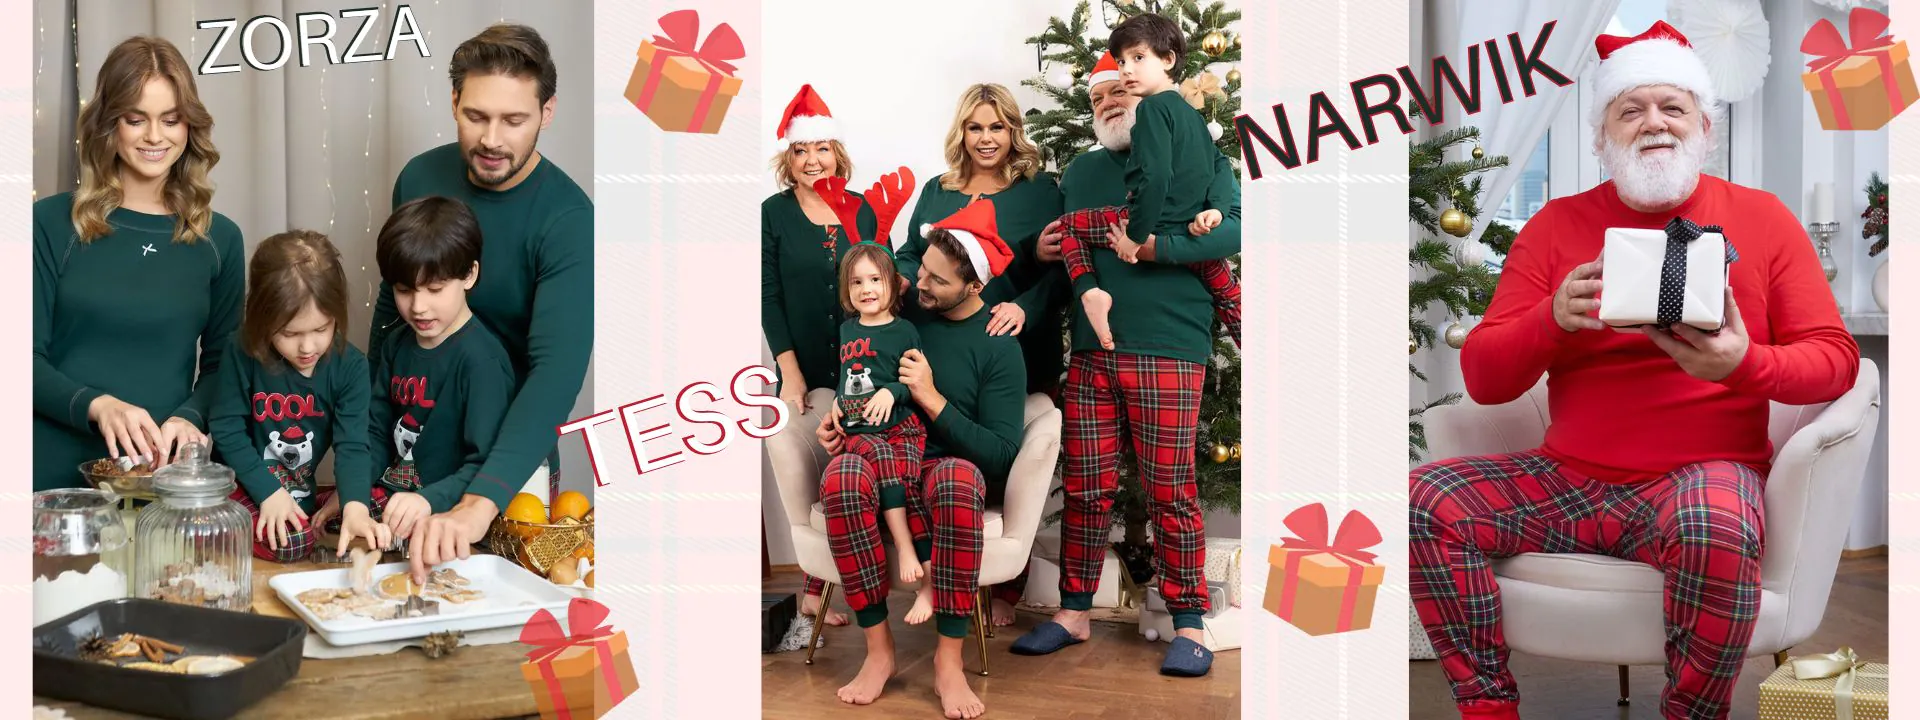 Italian Fashion rodzinne piżamy świąteczne Zorza Narwik Tess